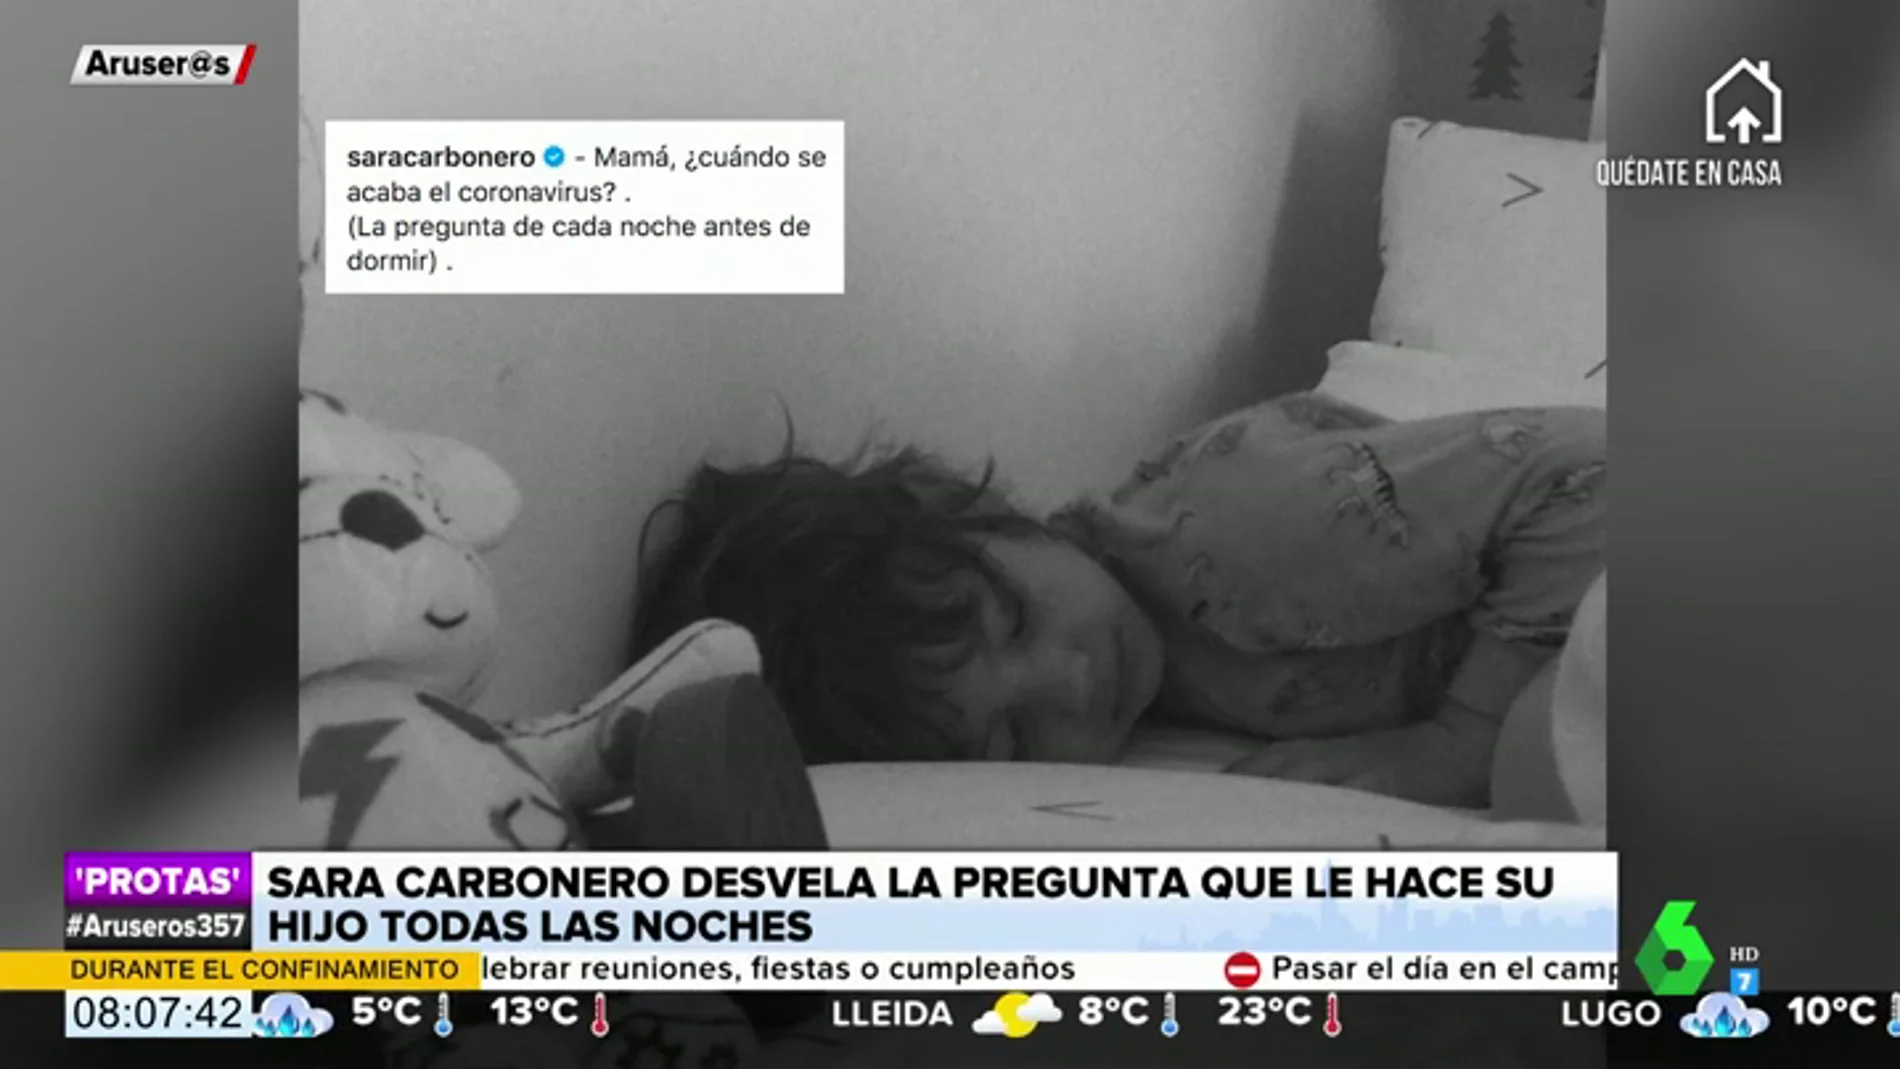 Sara Carbonero desvela la tierna pregunta sobre el coronavirus que le formula su hijo "todas las noches antes de irse a dormir"